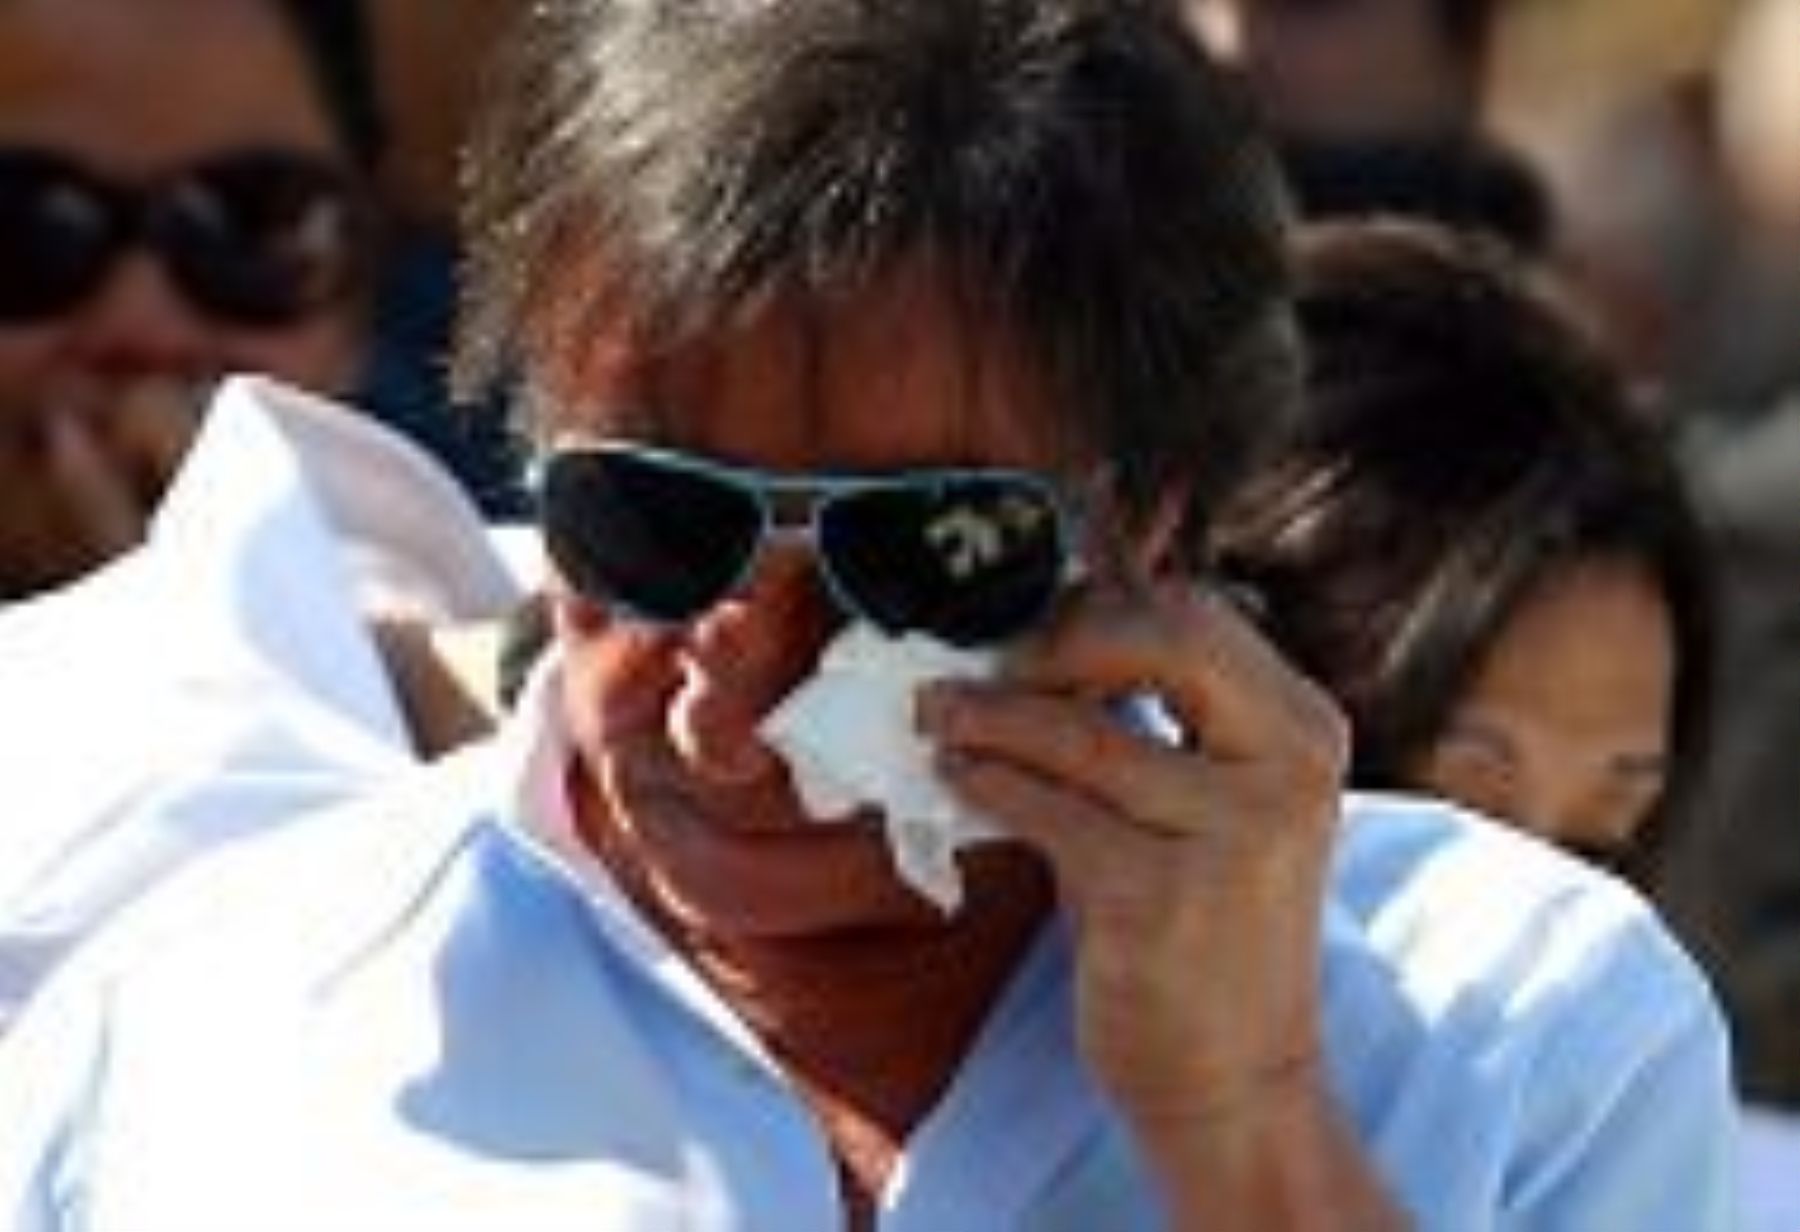 Roberto Carlos no pudo contener el dolor que le embarga por la muerte de su madre. Cantó y lloró durante el sepelio. Foto: O Globo.